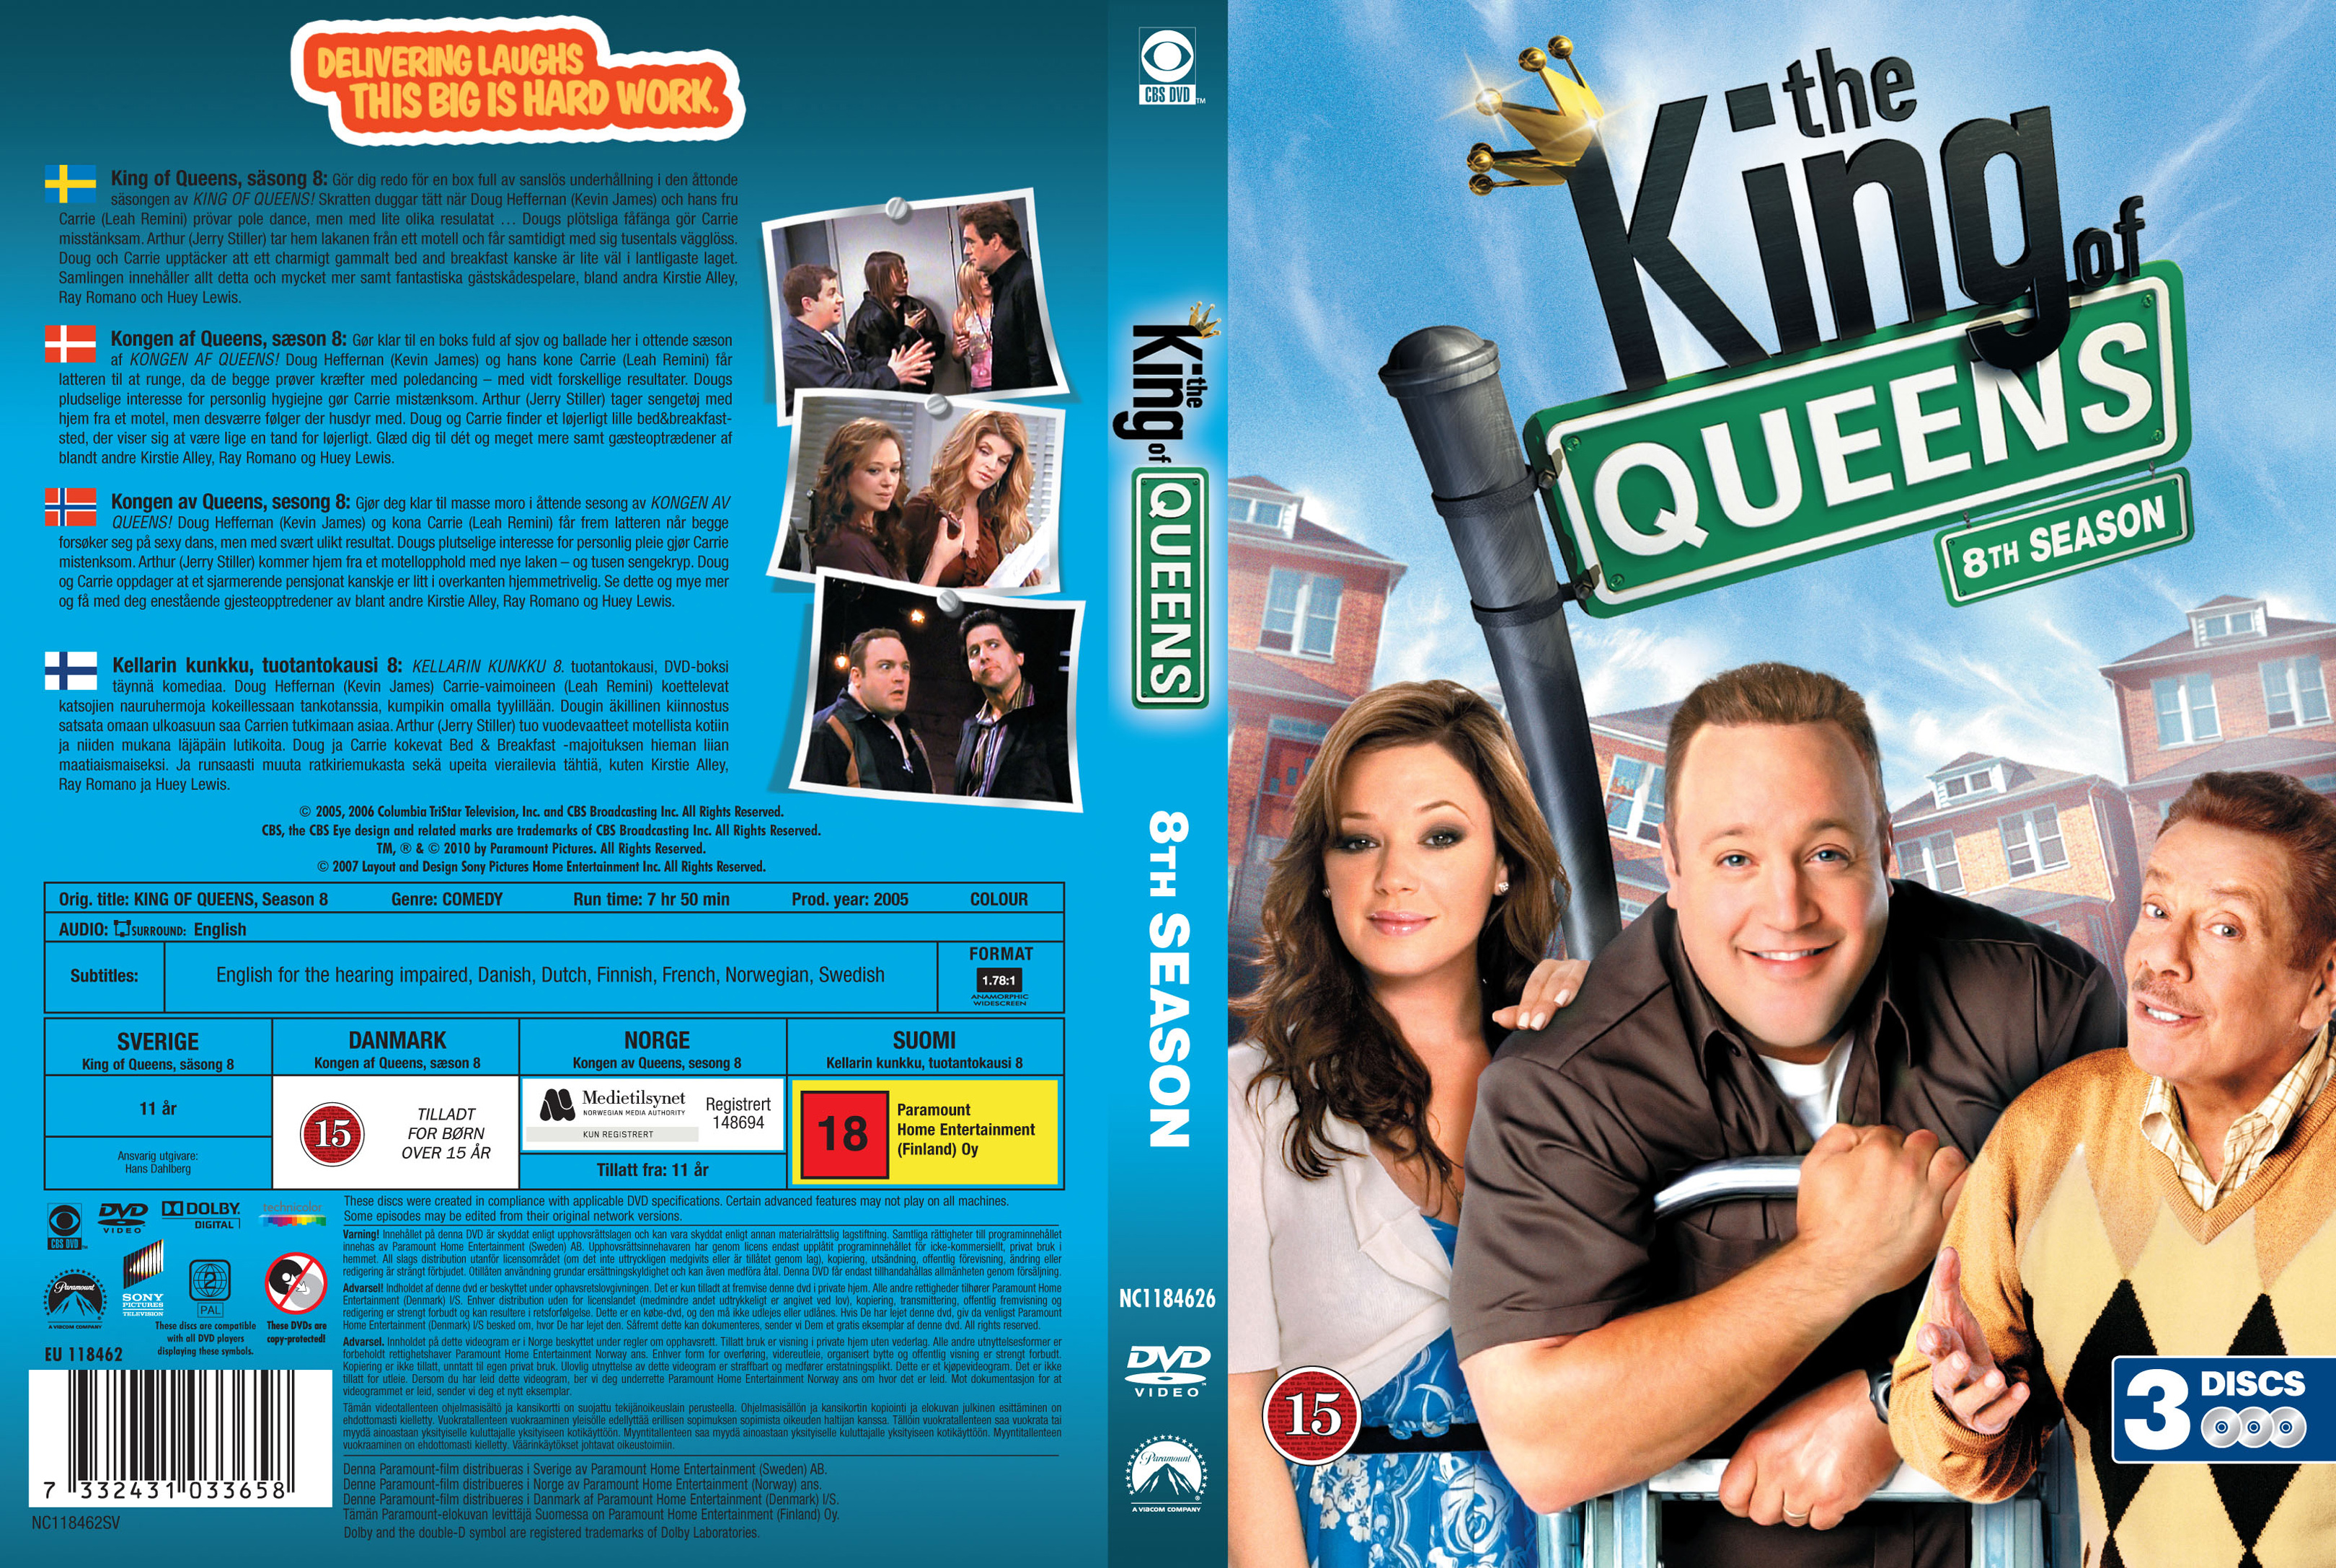 King of Queens - Staffel 8 DVD-Box auf DVD - jetzt bei bücher.de bestellen